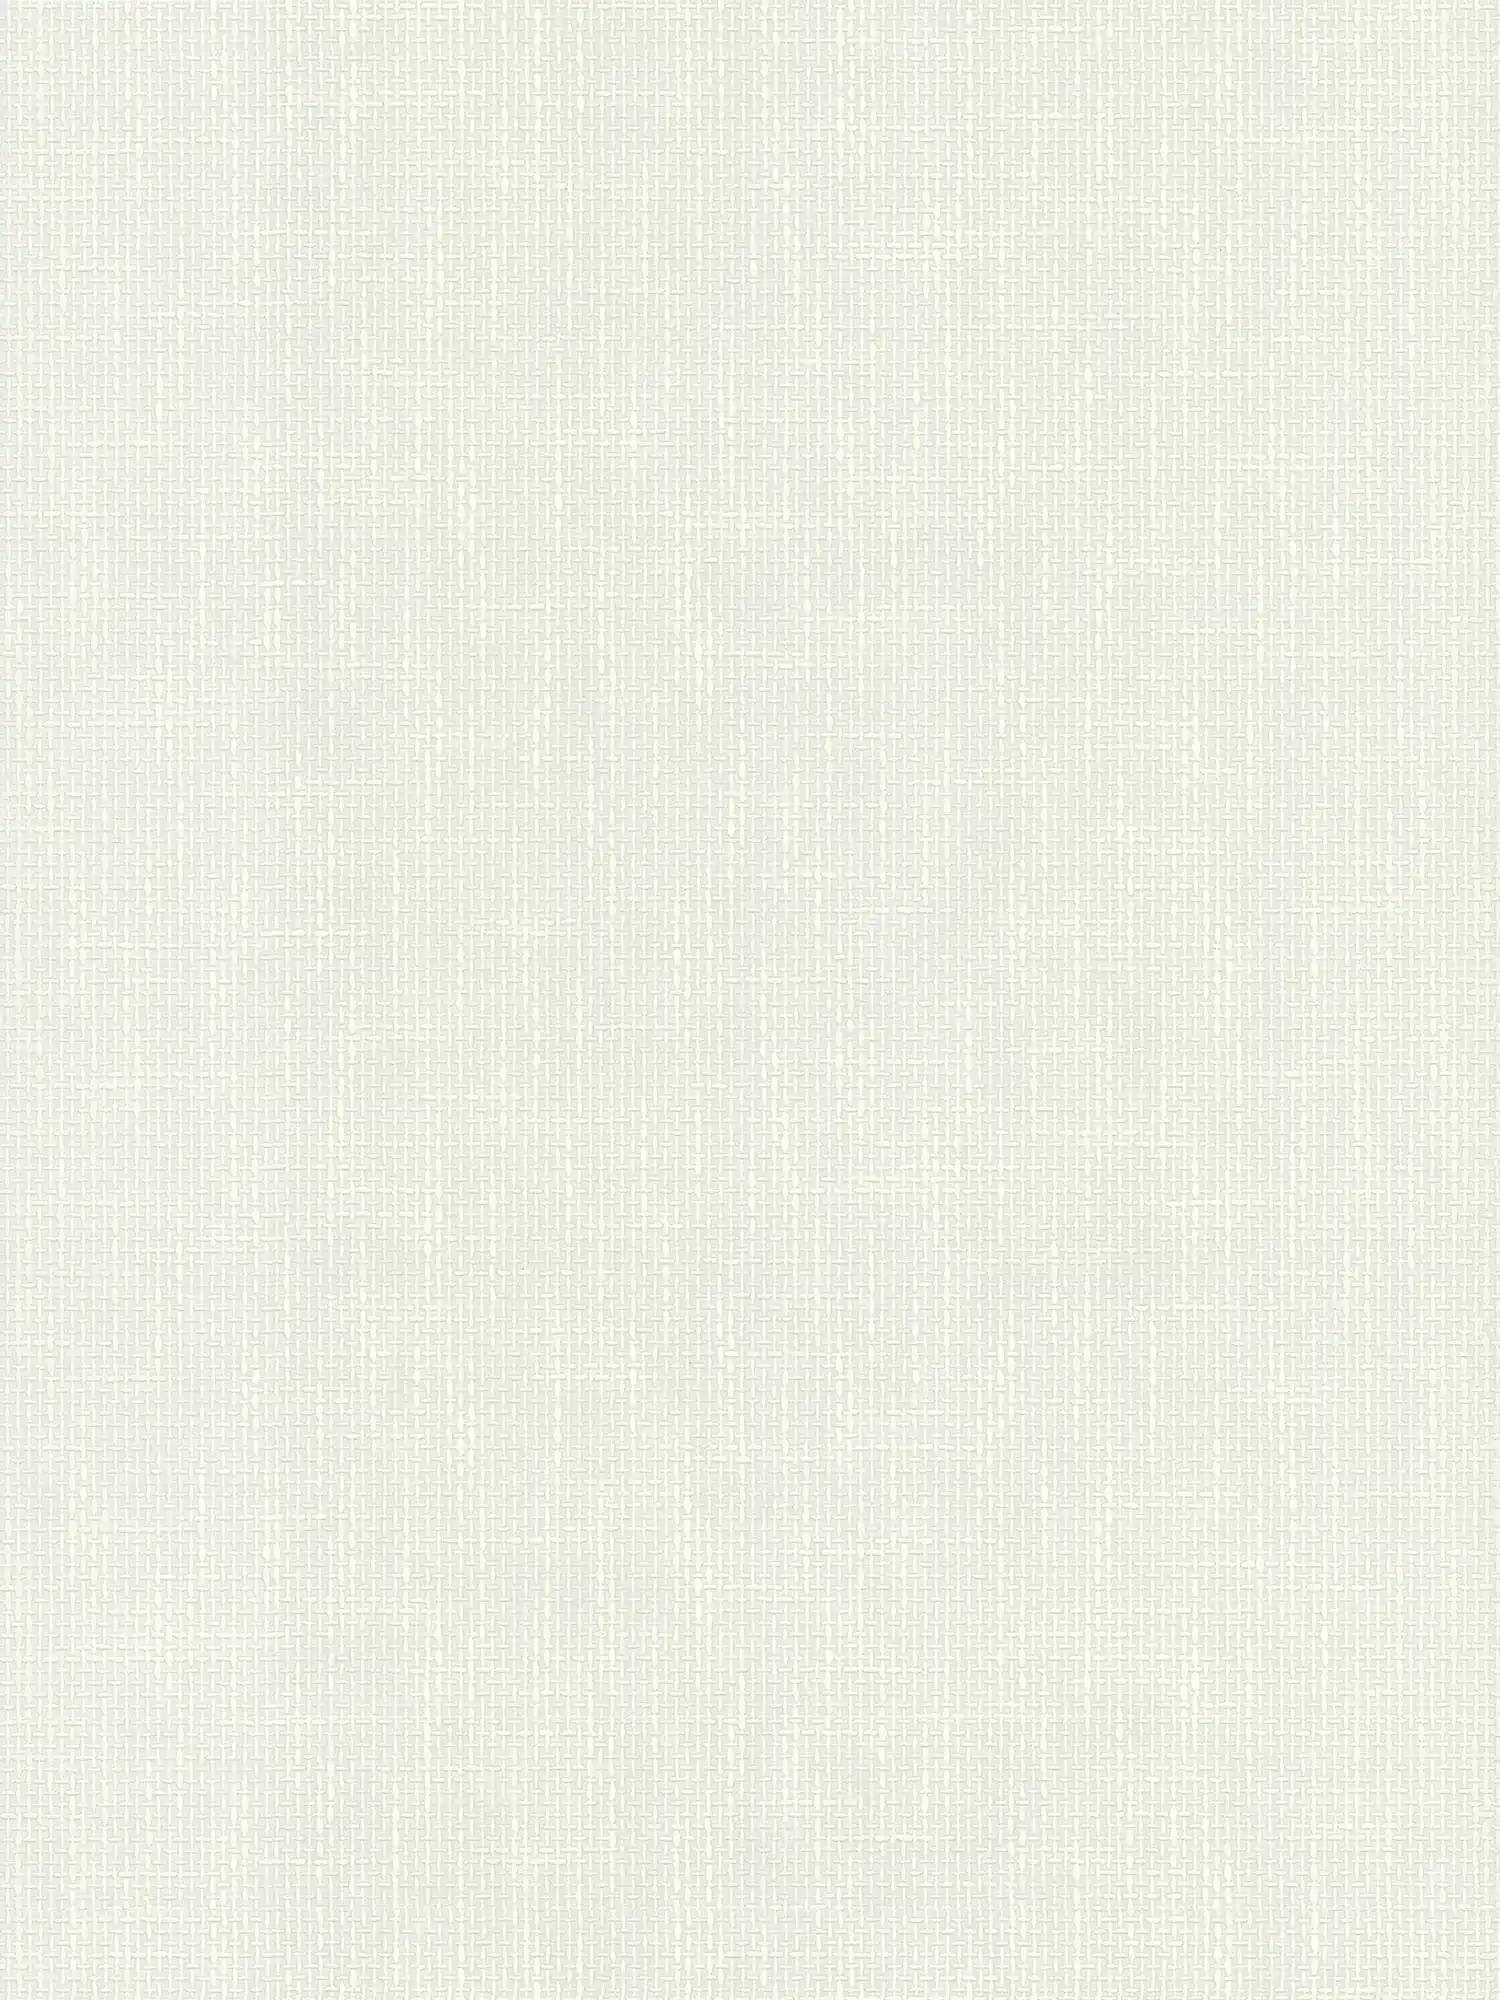 Carta da parati profilata con struttura in tessuto effetto lino - bianco
